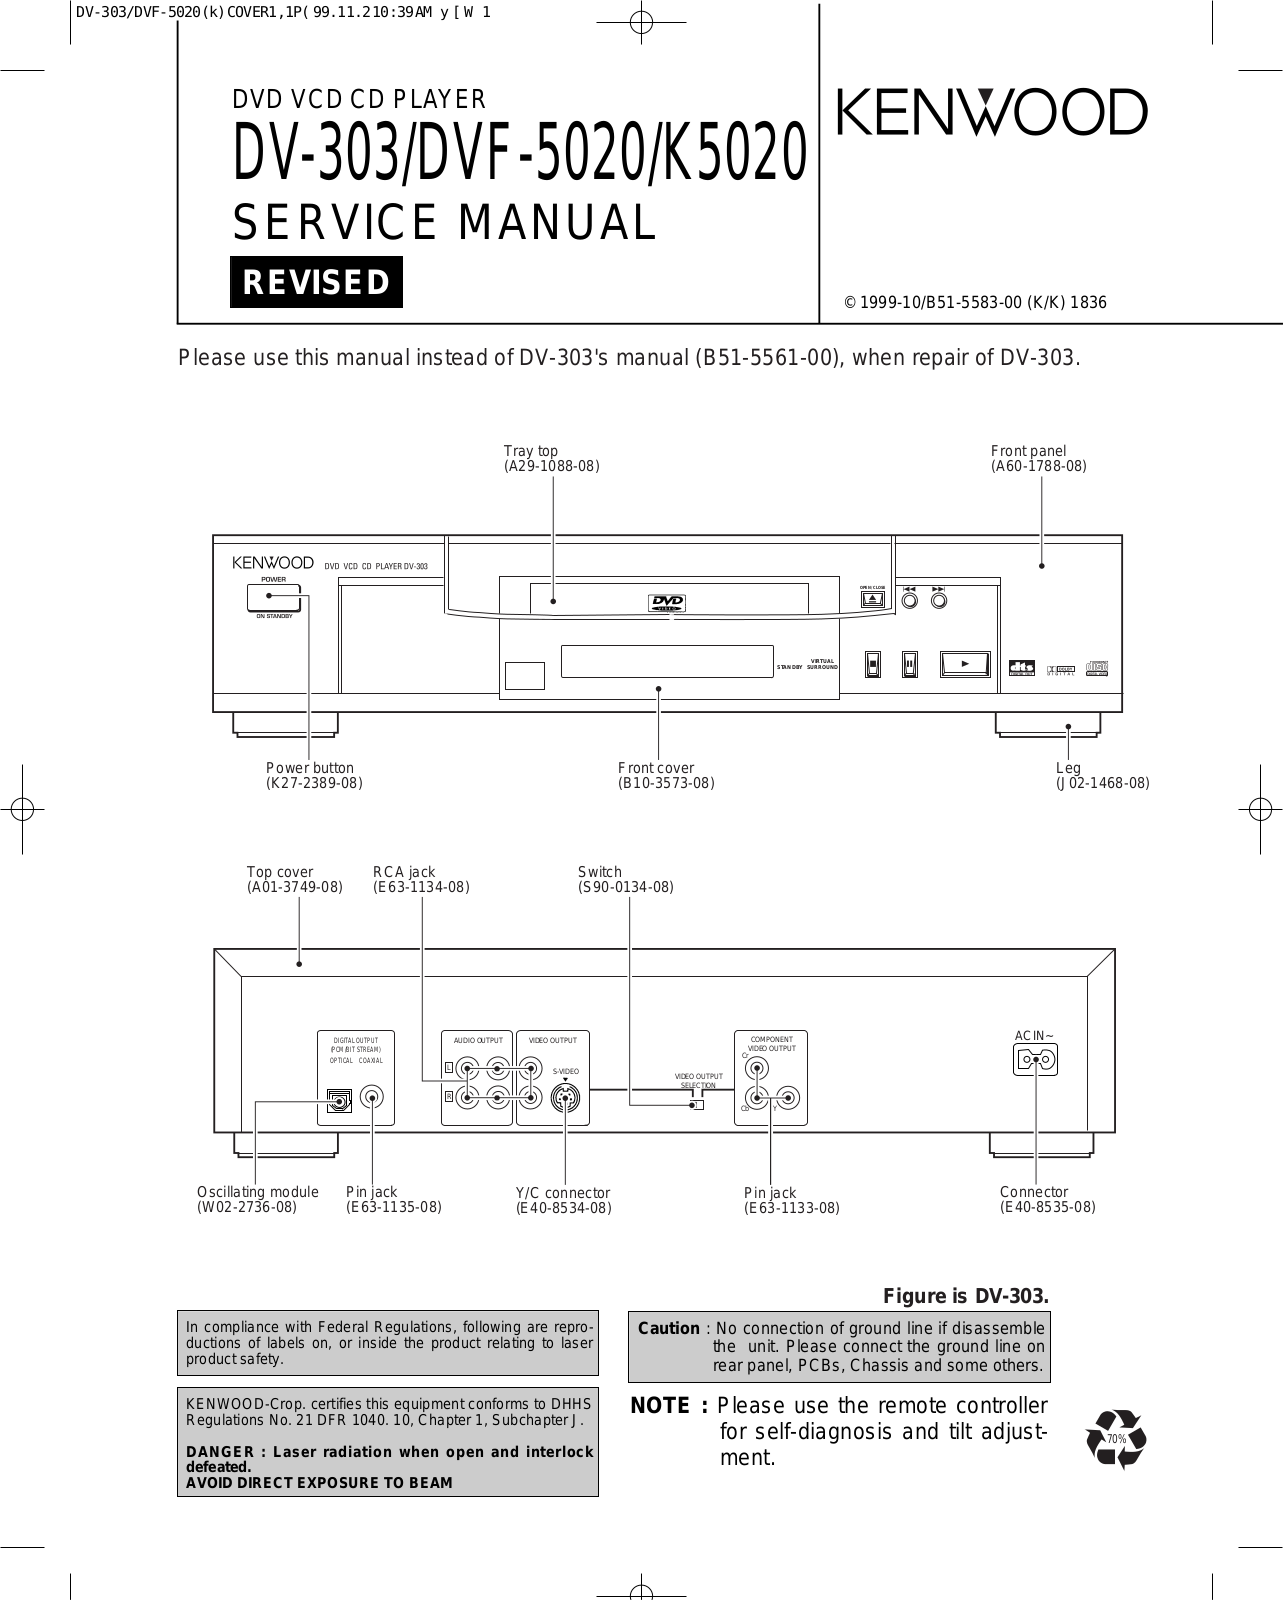 Kenwood K5020 Service Manual